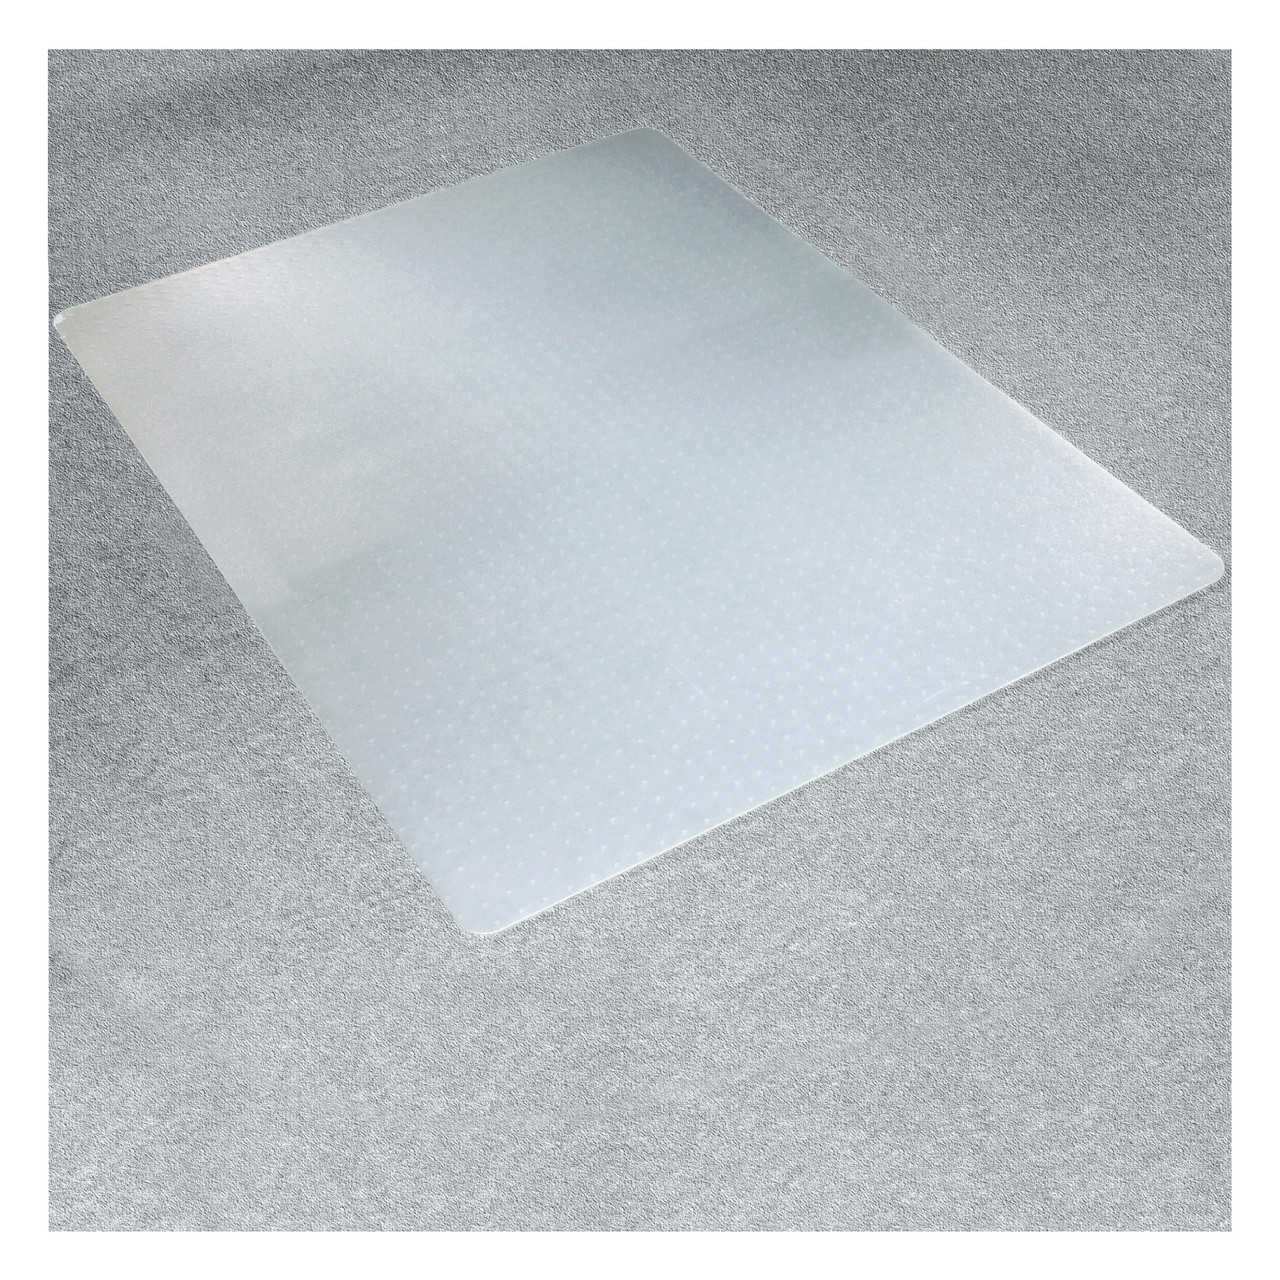 Marvelux Polypropylen Bodenschutzmatte für niederflorige Teppiche (bis 6 mm  Höhe), milchig-transparente Bürostuhlunterlage, rechteckig, flach  verpackt